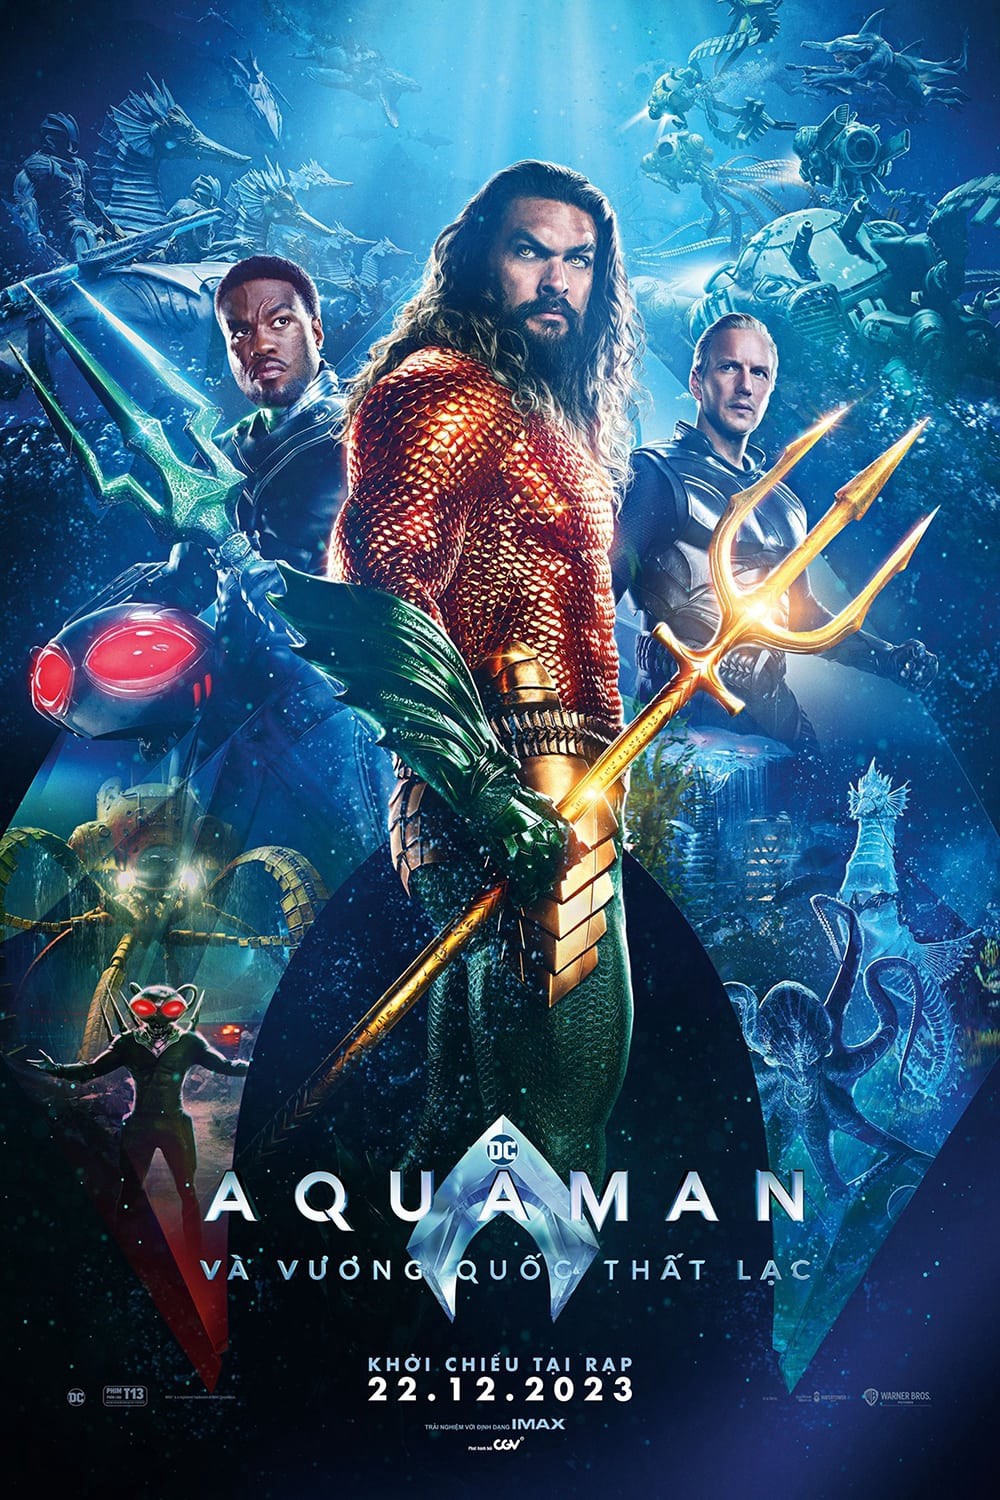 Xem phim Aquaman 2: Vương Quốc Thất Lạc